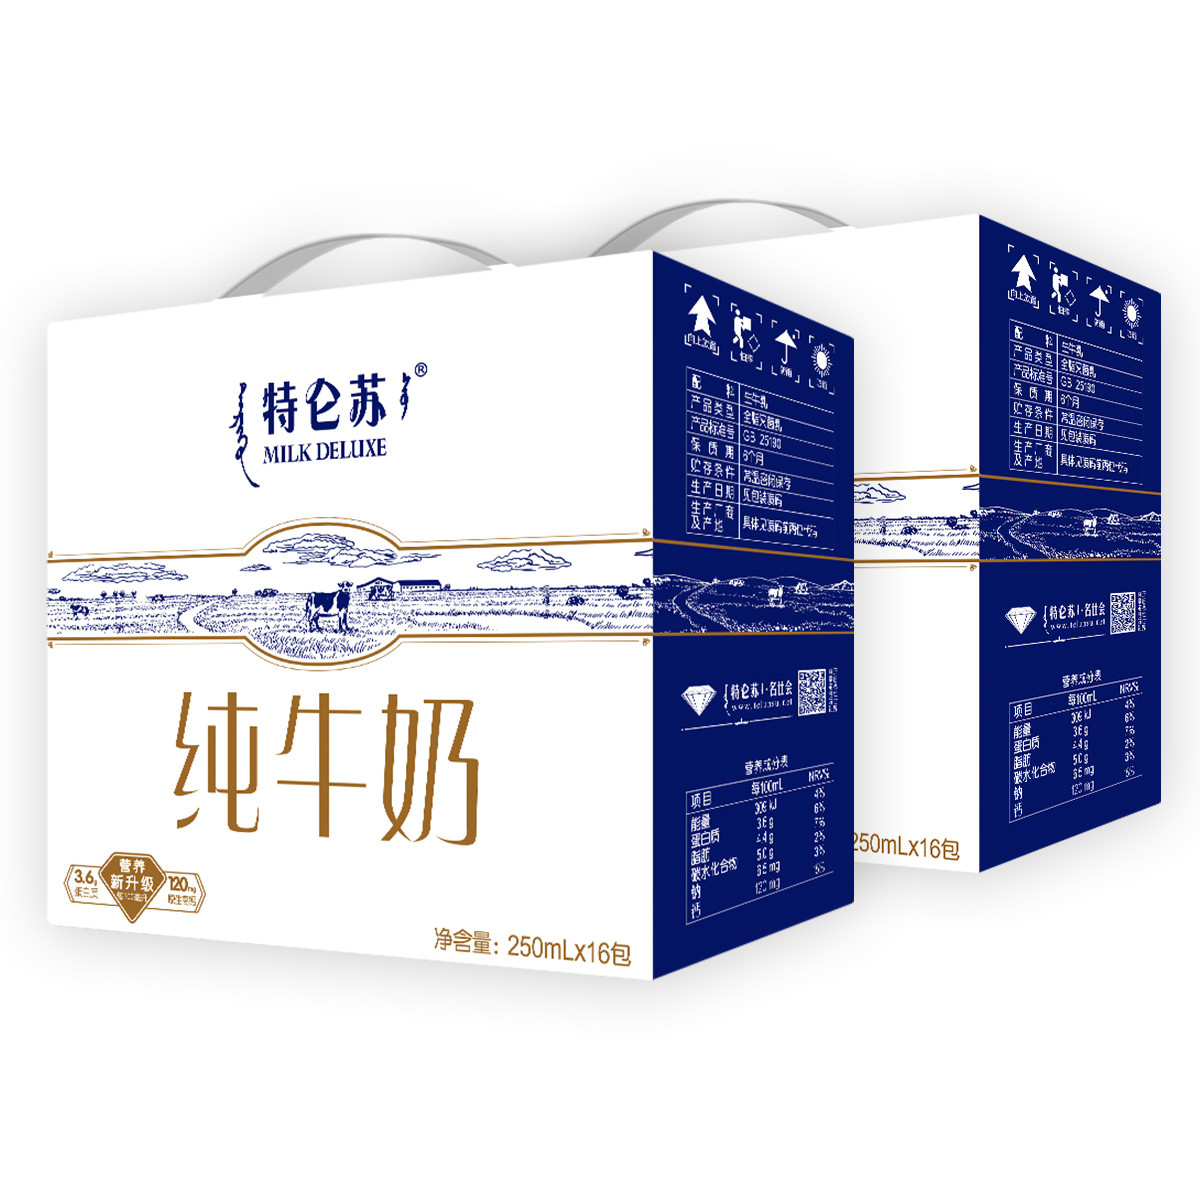 特仑苏纯牛奶利乐钻250ml*16包(8-10月生产)